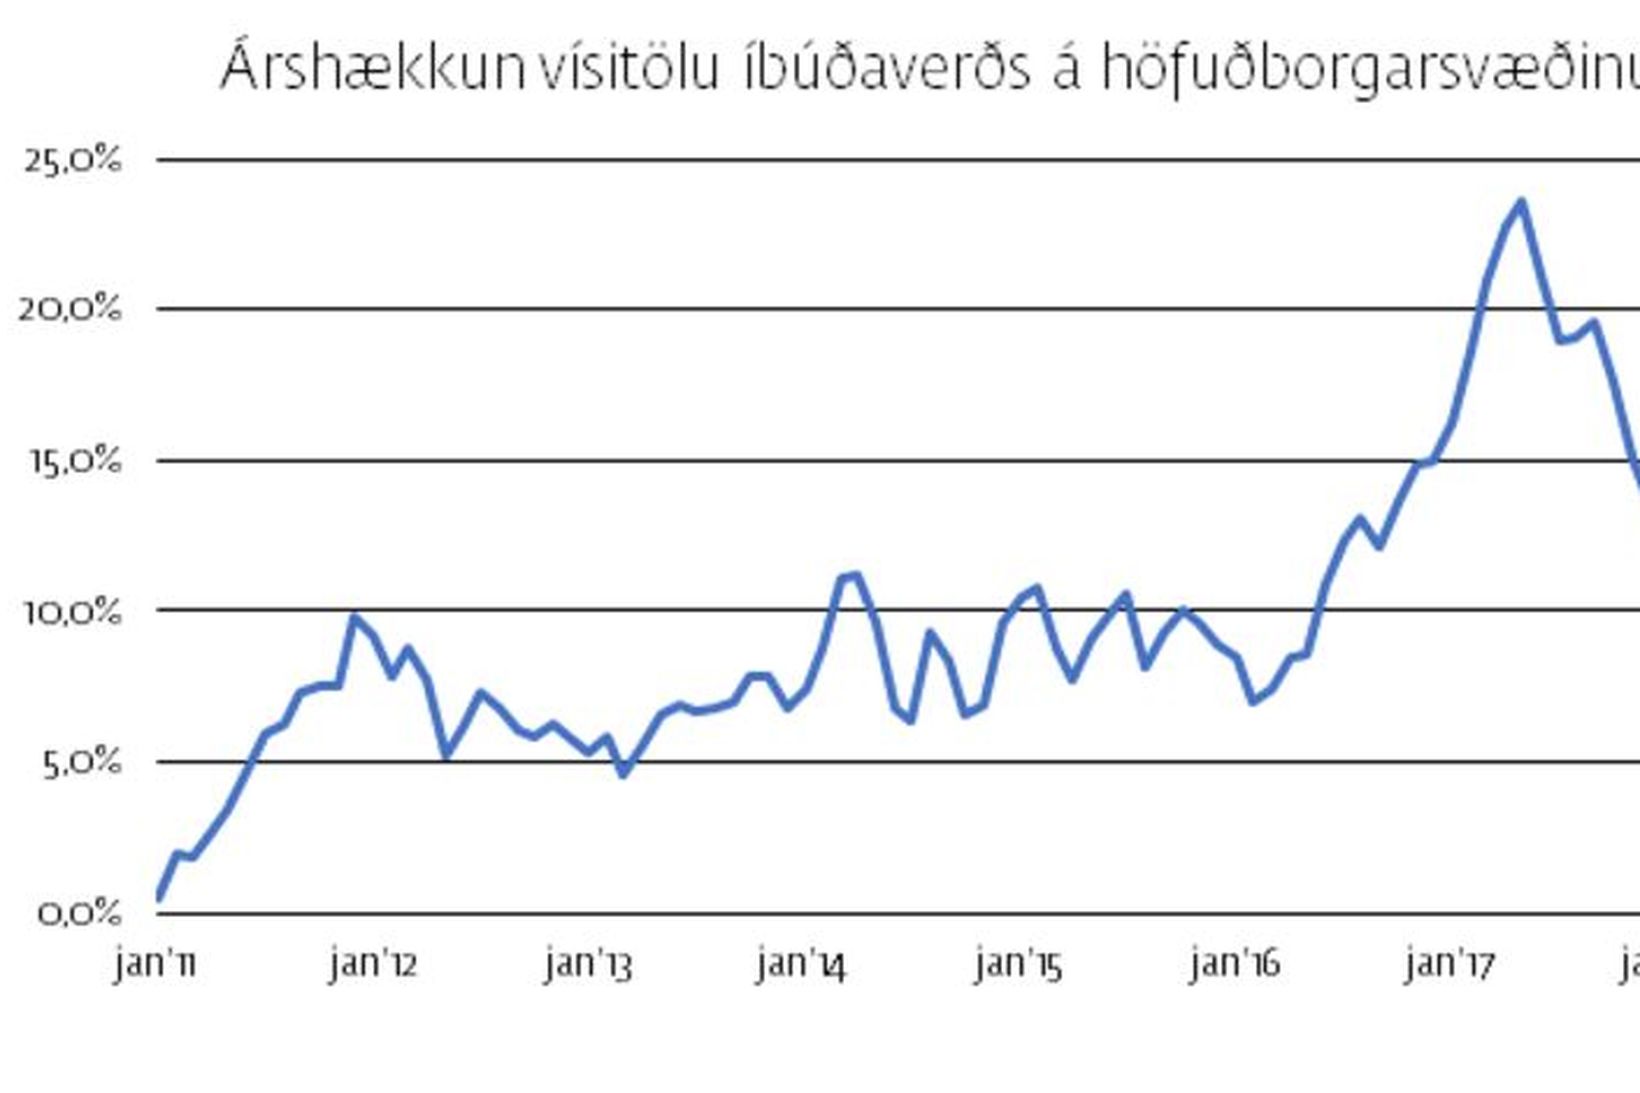 Árshækkun vísitölu íbúðaverðs á höfuðborgarsvæðinu er nú 5,9%.